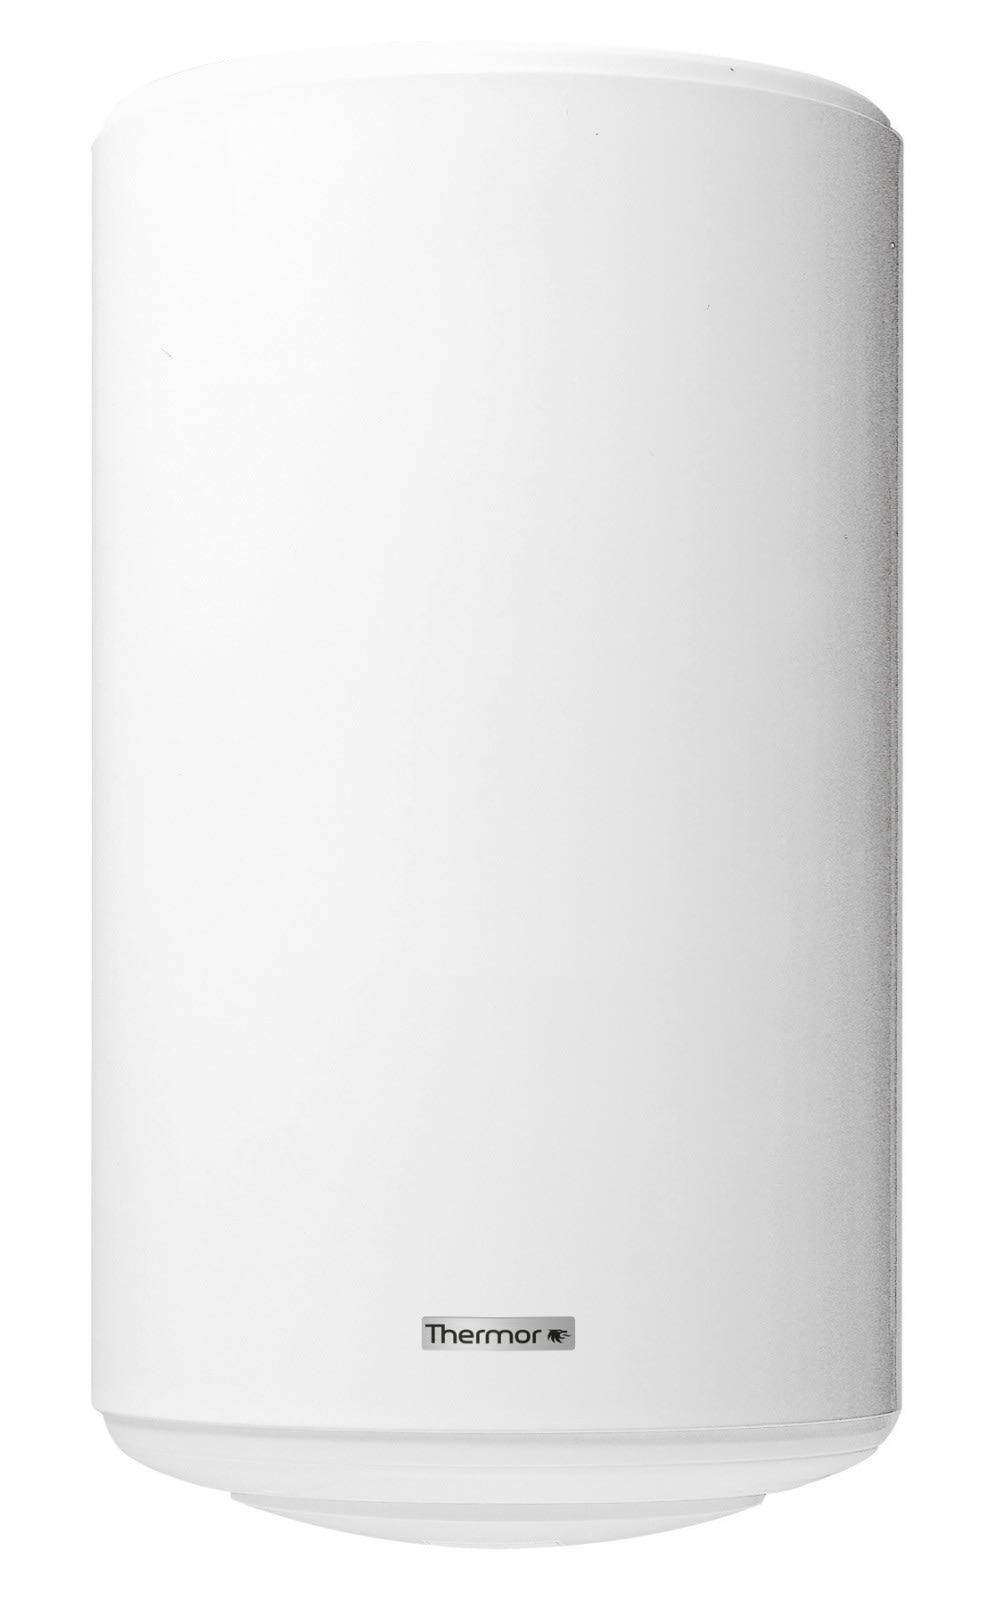 Thermor - PECS Preparateur d'eau Chaude a Echangeur Annulaire 150L multiposition mixte